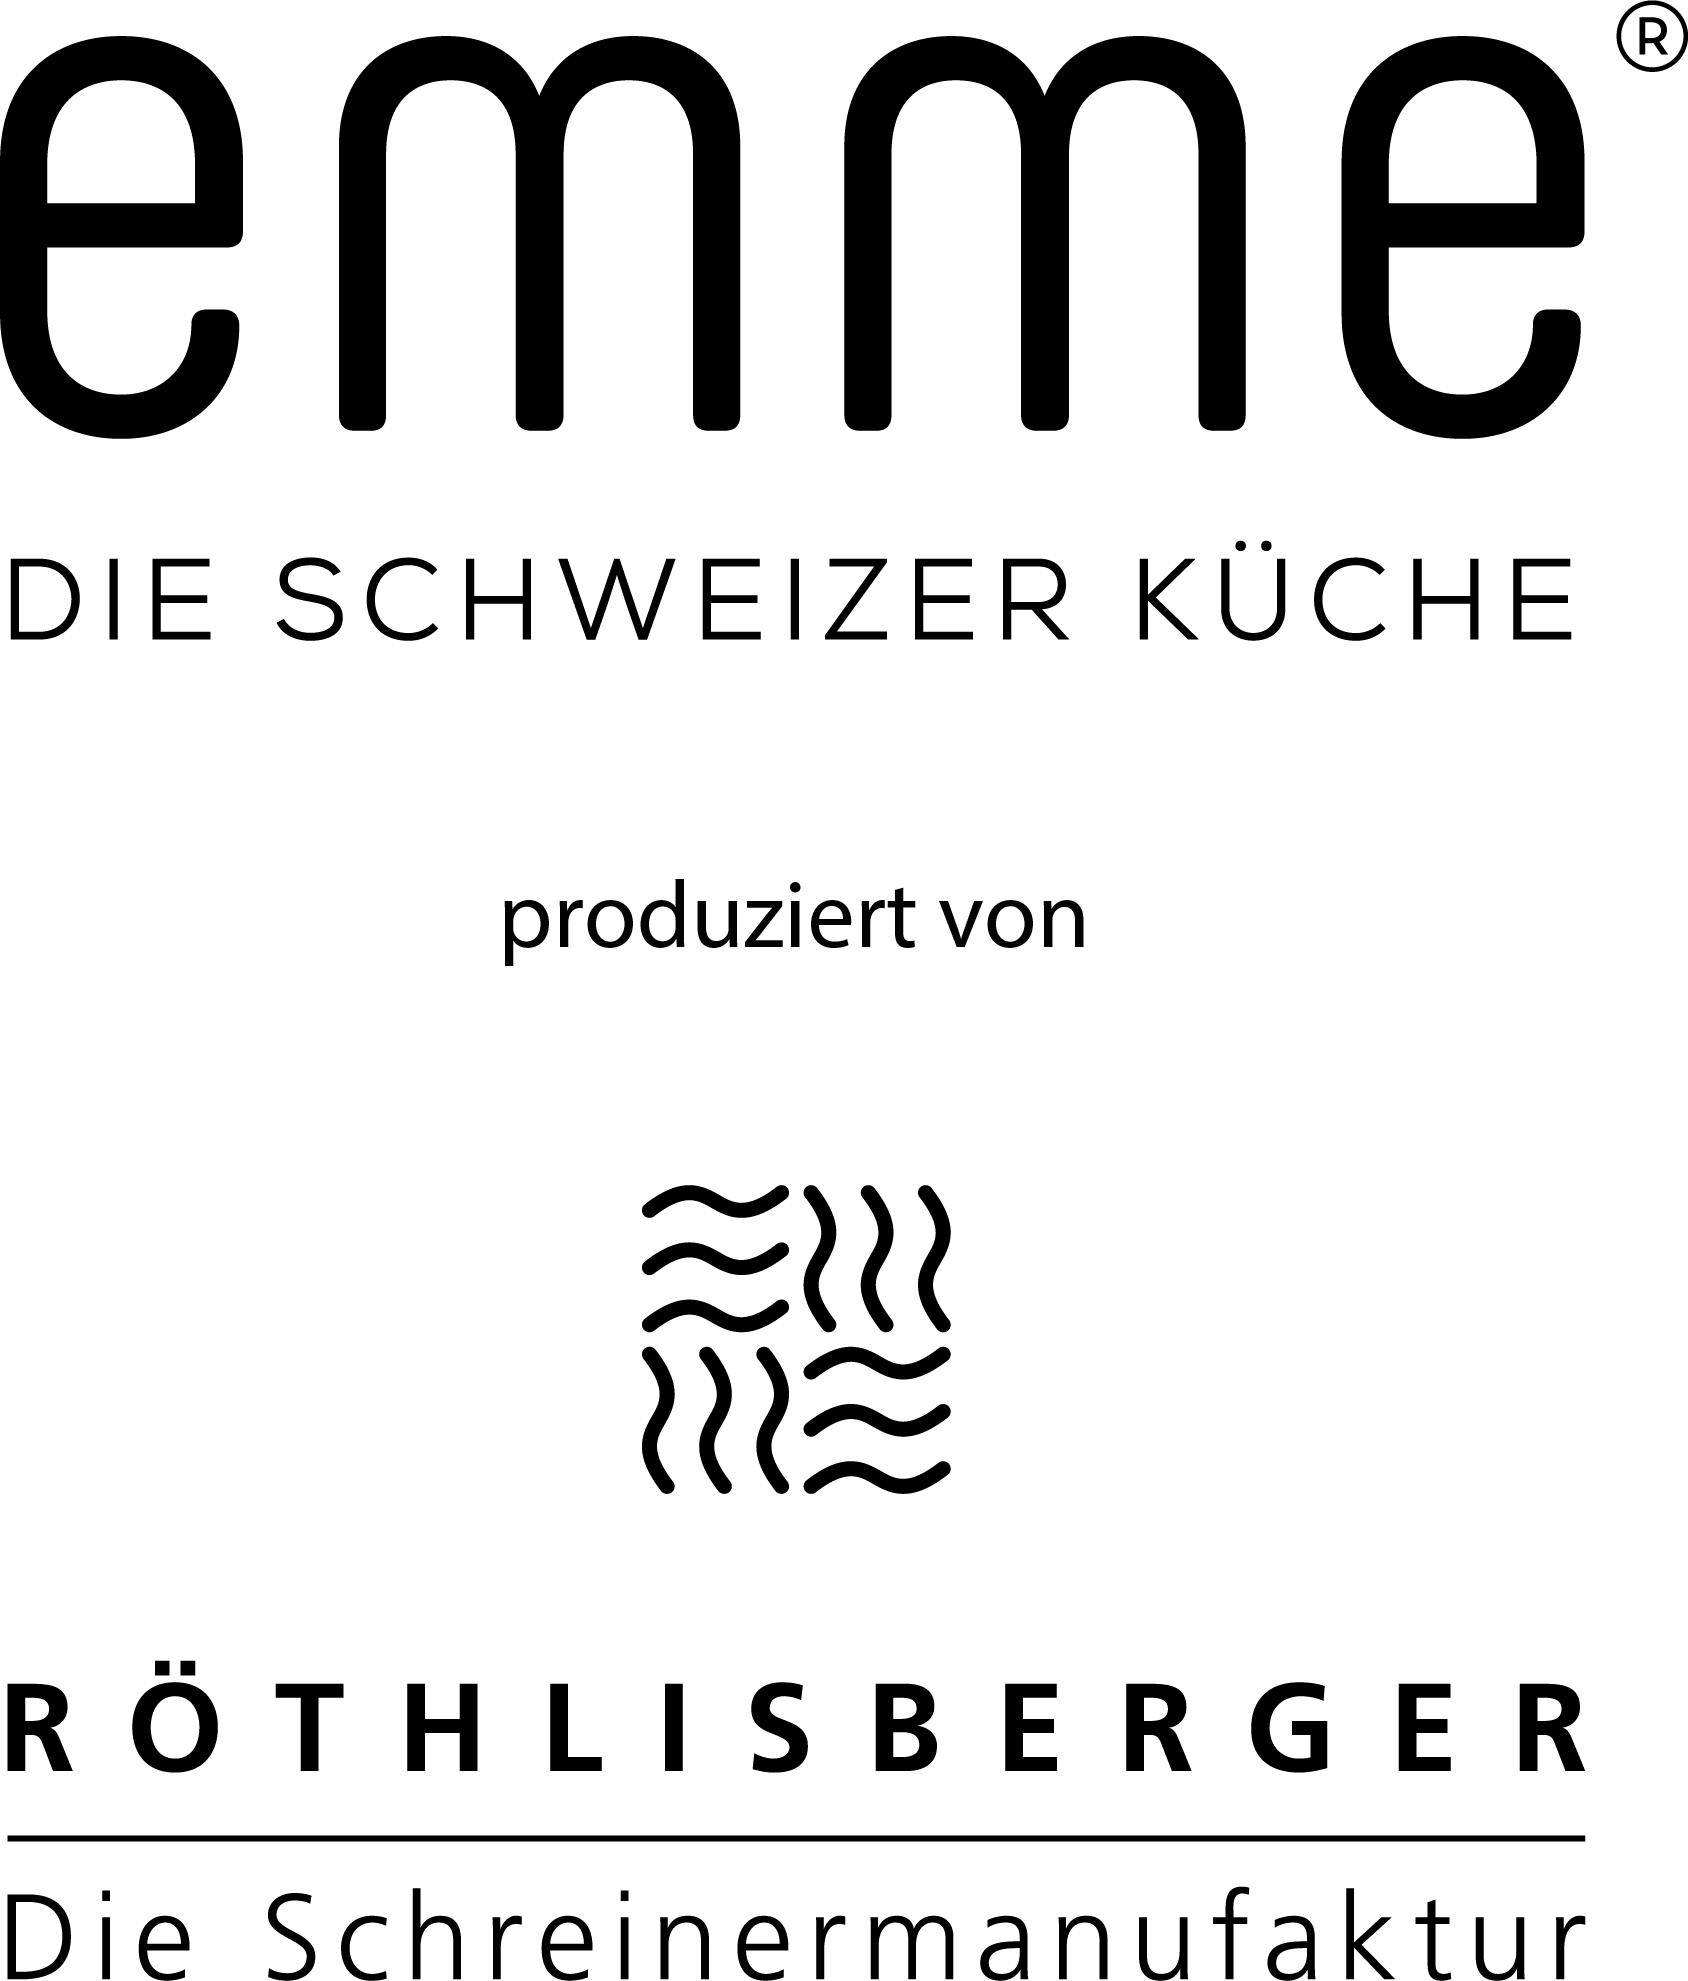 Röthlisberger AG - Die Schreinermanufaktur